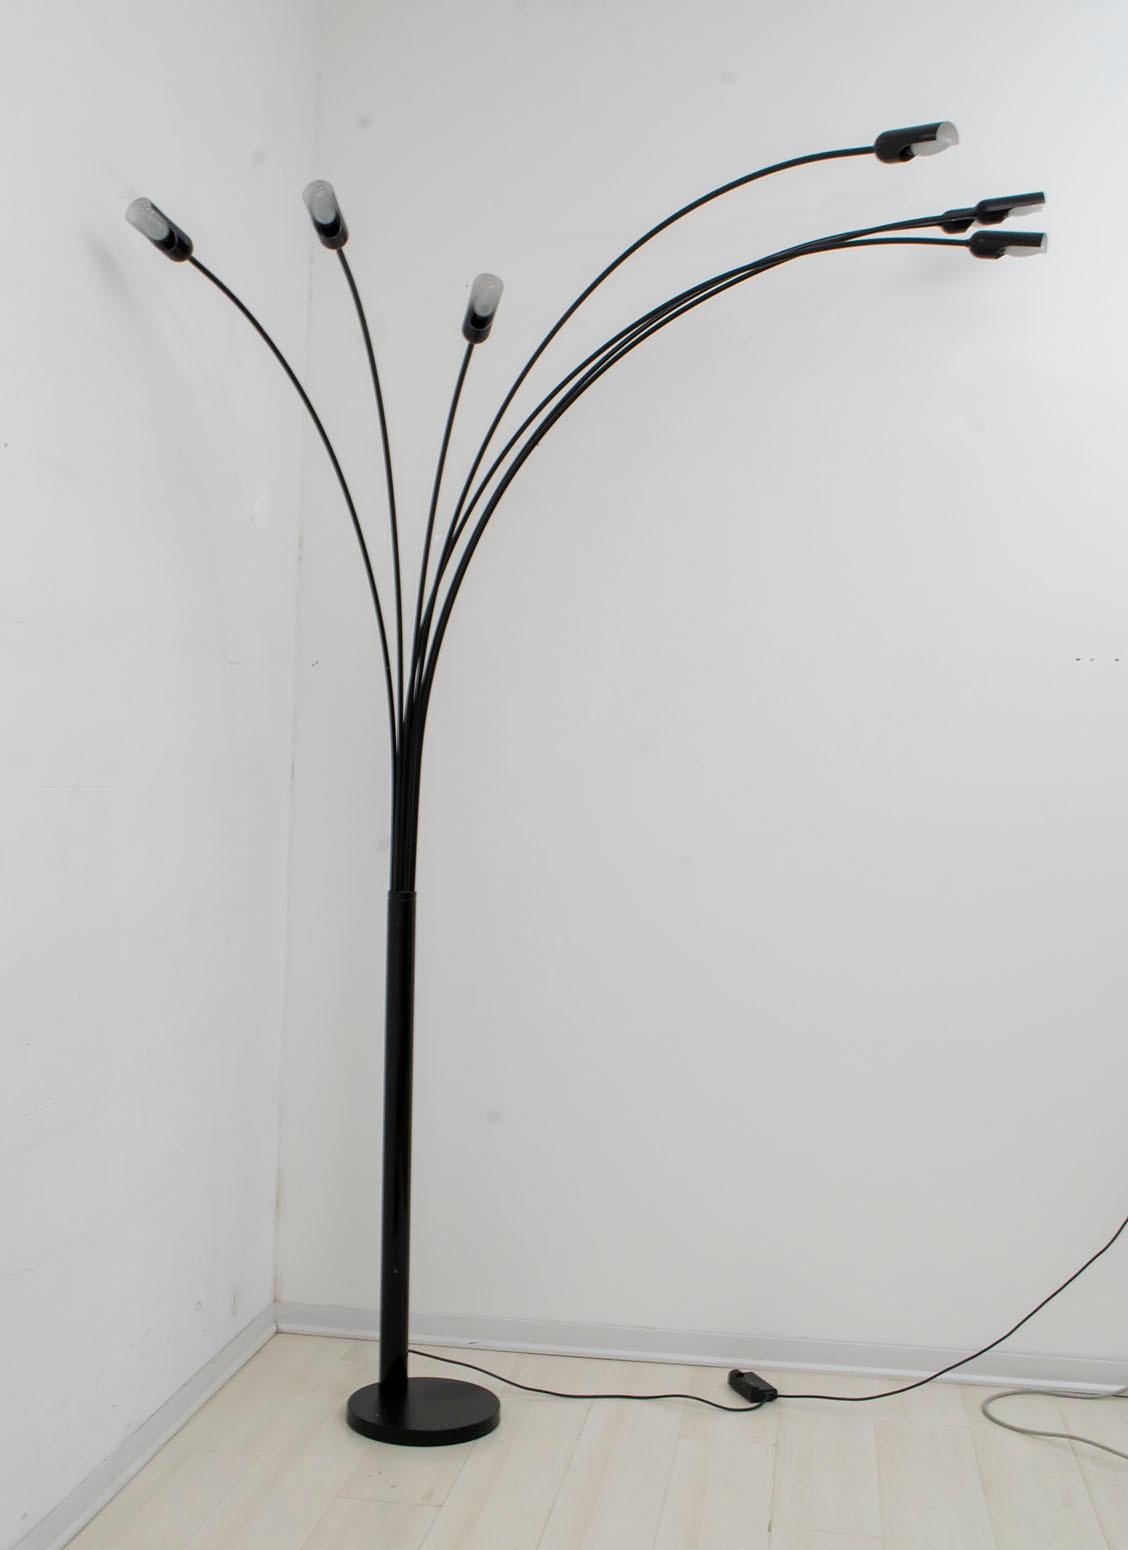 Lampadaire à sept arcs de différentes tailles, produit dans les années 1970 par la société italienne The Relux de Milan. La lampe est équipée d'un variateur qui permet de régler la densité de la lumière.